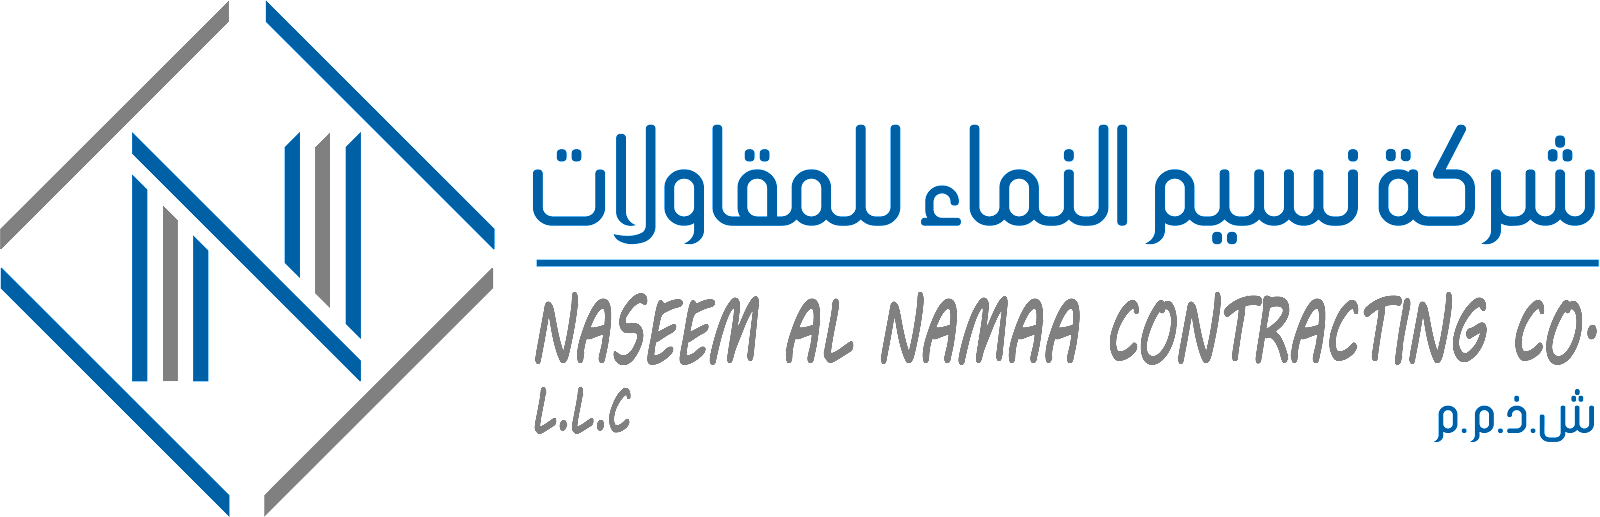 Naseem Al Namaa Contracting Company - شركة نسيم النماء للمقاولات